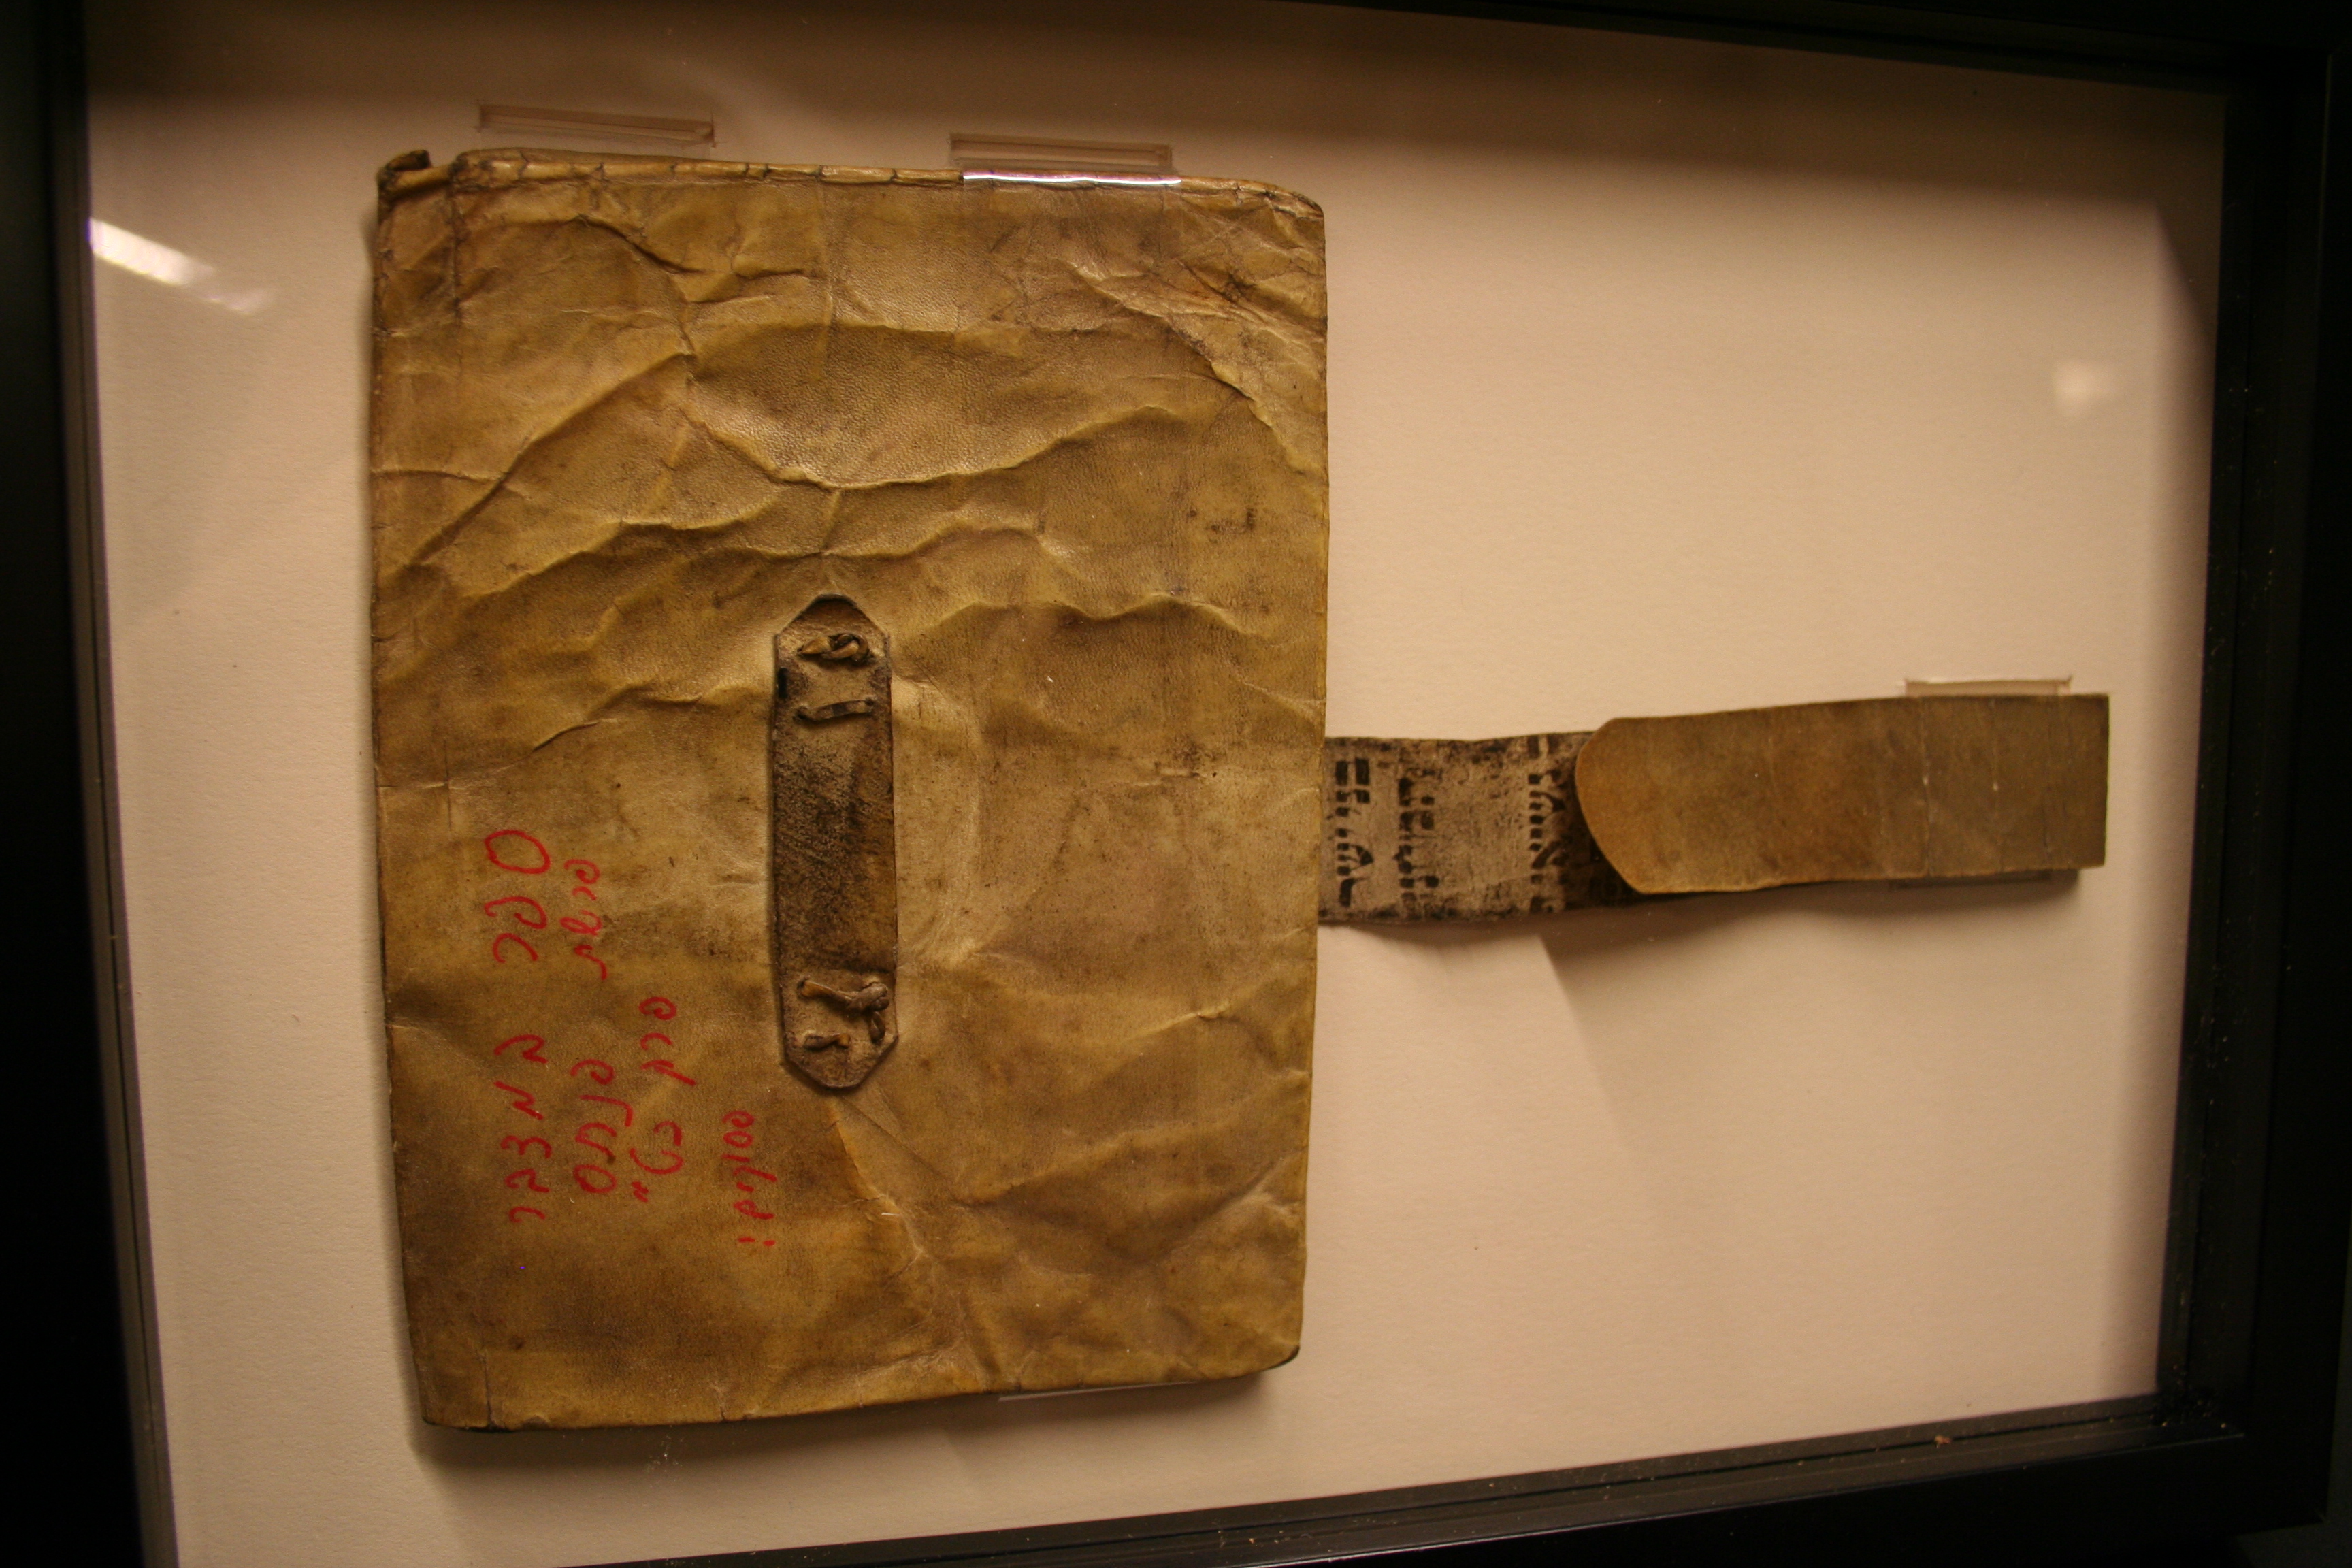 Wallet, Holocaust artifact